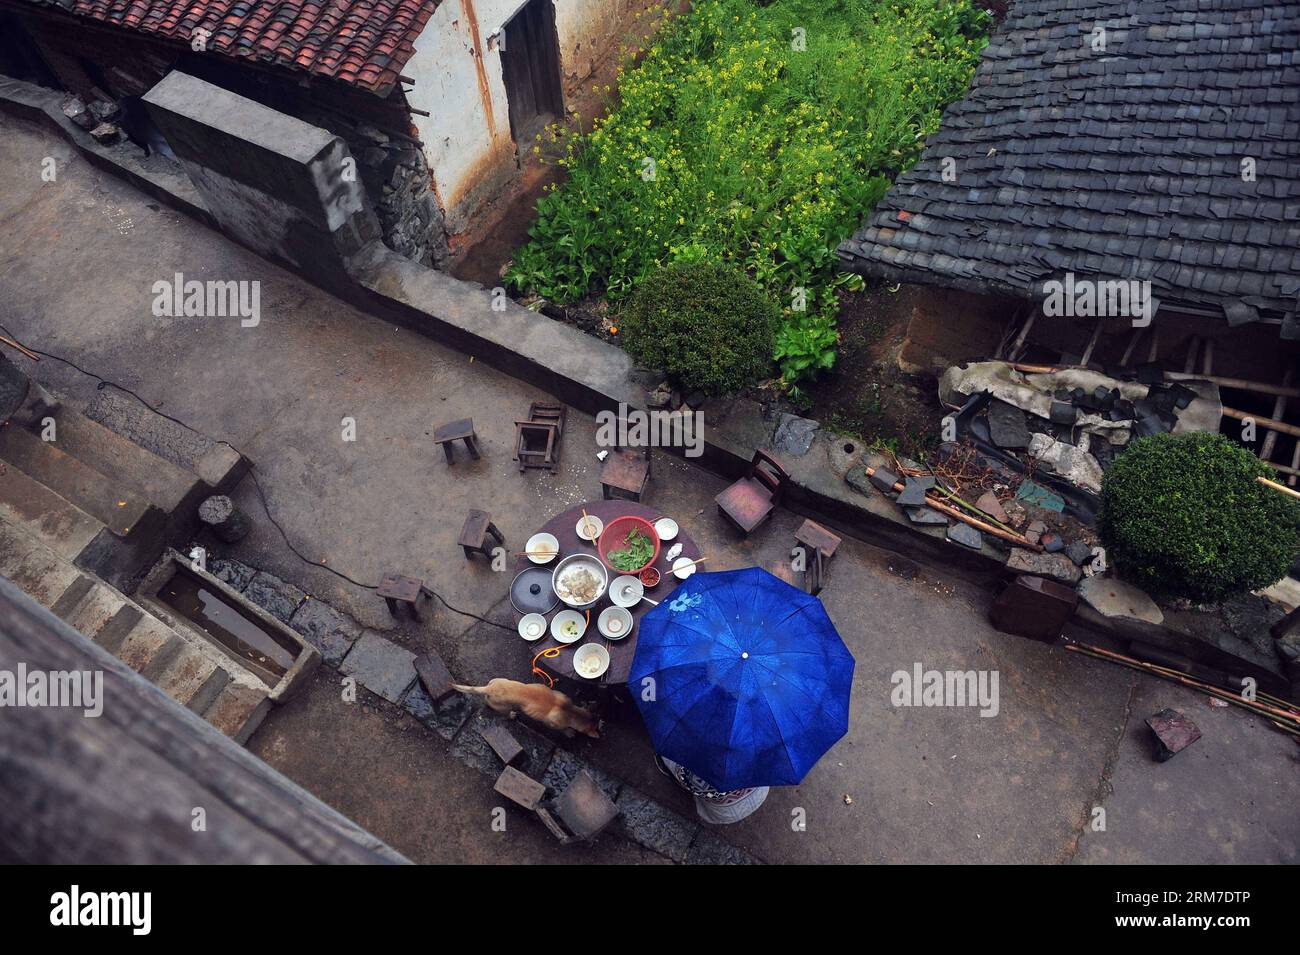 Les touristes déjeunent sous la pluie dans une maison de villageois dans le village de Tongban, comté de Rong an, région autonome de Guangxi Zhuang, sud de la Chine, le 22 février 2014. Le village de Tongban, situé dans les zones montagneuses du comté de Rong an dans la région autonome de Guangxi Zhuang, était autrefois un petit village de plus de 100 habitants qui gagnaient leur vie en plantant des pruniers. Depuis les années 1990, la jeune génération de Tongban a abandonné la vie là-bas et commencé à travailler dans les villes. Alors que de plus en plus de jeunes quittaient la ville natale, le village autrefois animé était sur le déclin avec seulement quelques villageois âgés demeurant Banque D'Images